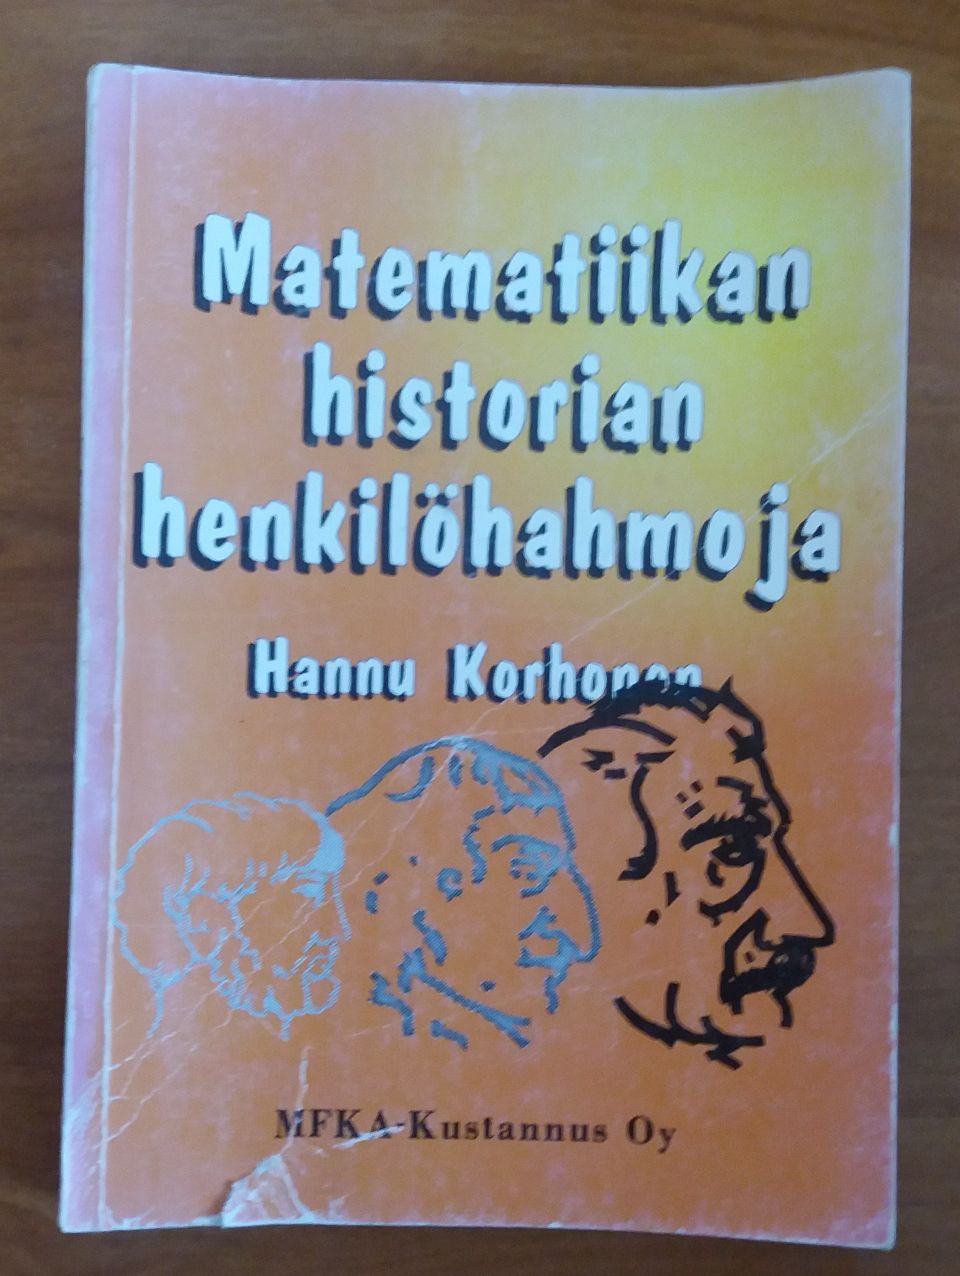 Hannu Korhonen MATEMATIIKAN historian henkilöhahmoja MFKA-kustannus 1995